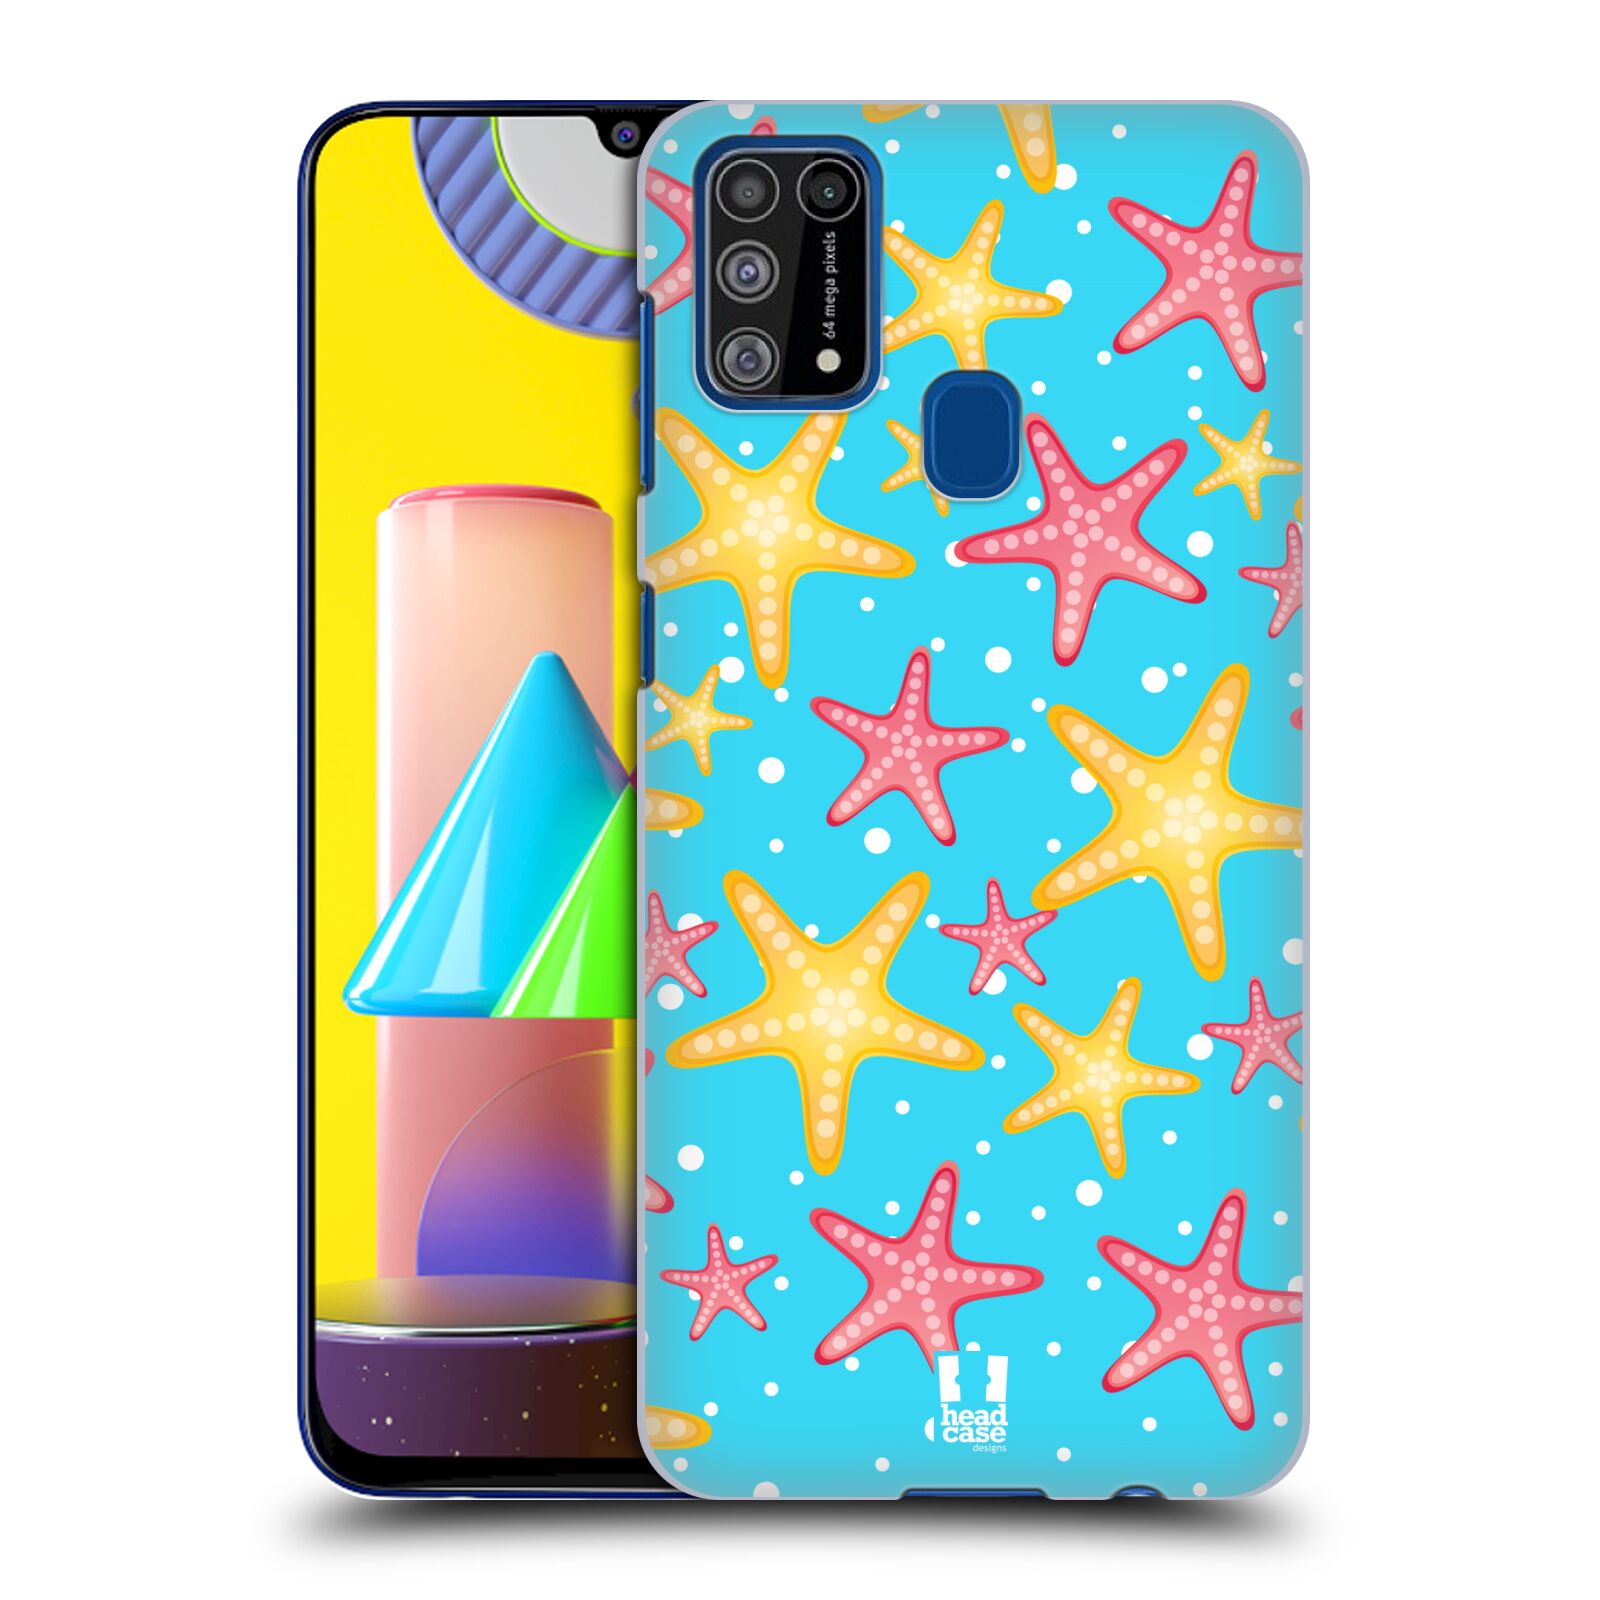 Zadní obal pro mobil Samsung Galaxy M31 - HEAD CASE - kreslený mořský vzor hvězda